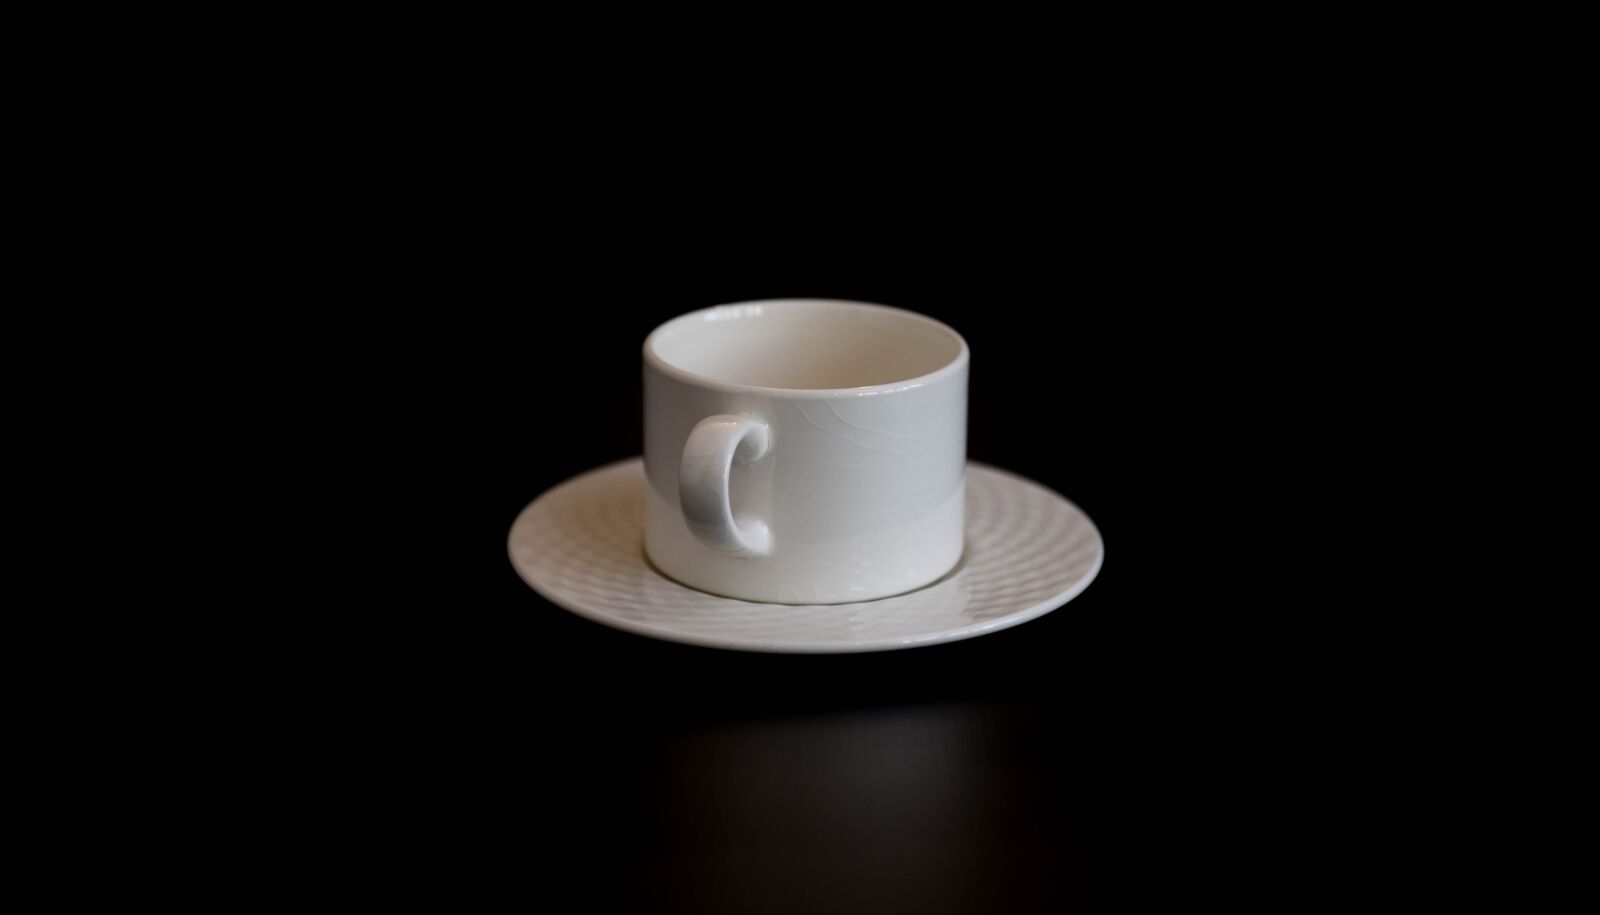 Nikon D750 sample photo. Cup, ceramic, saucer photography